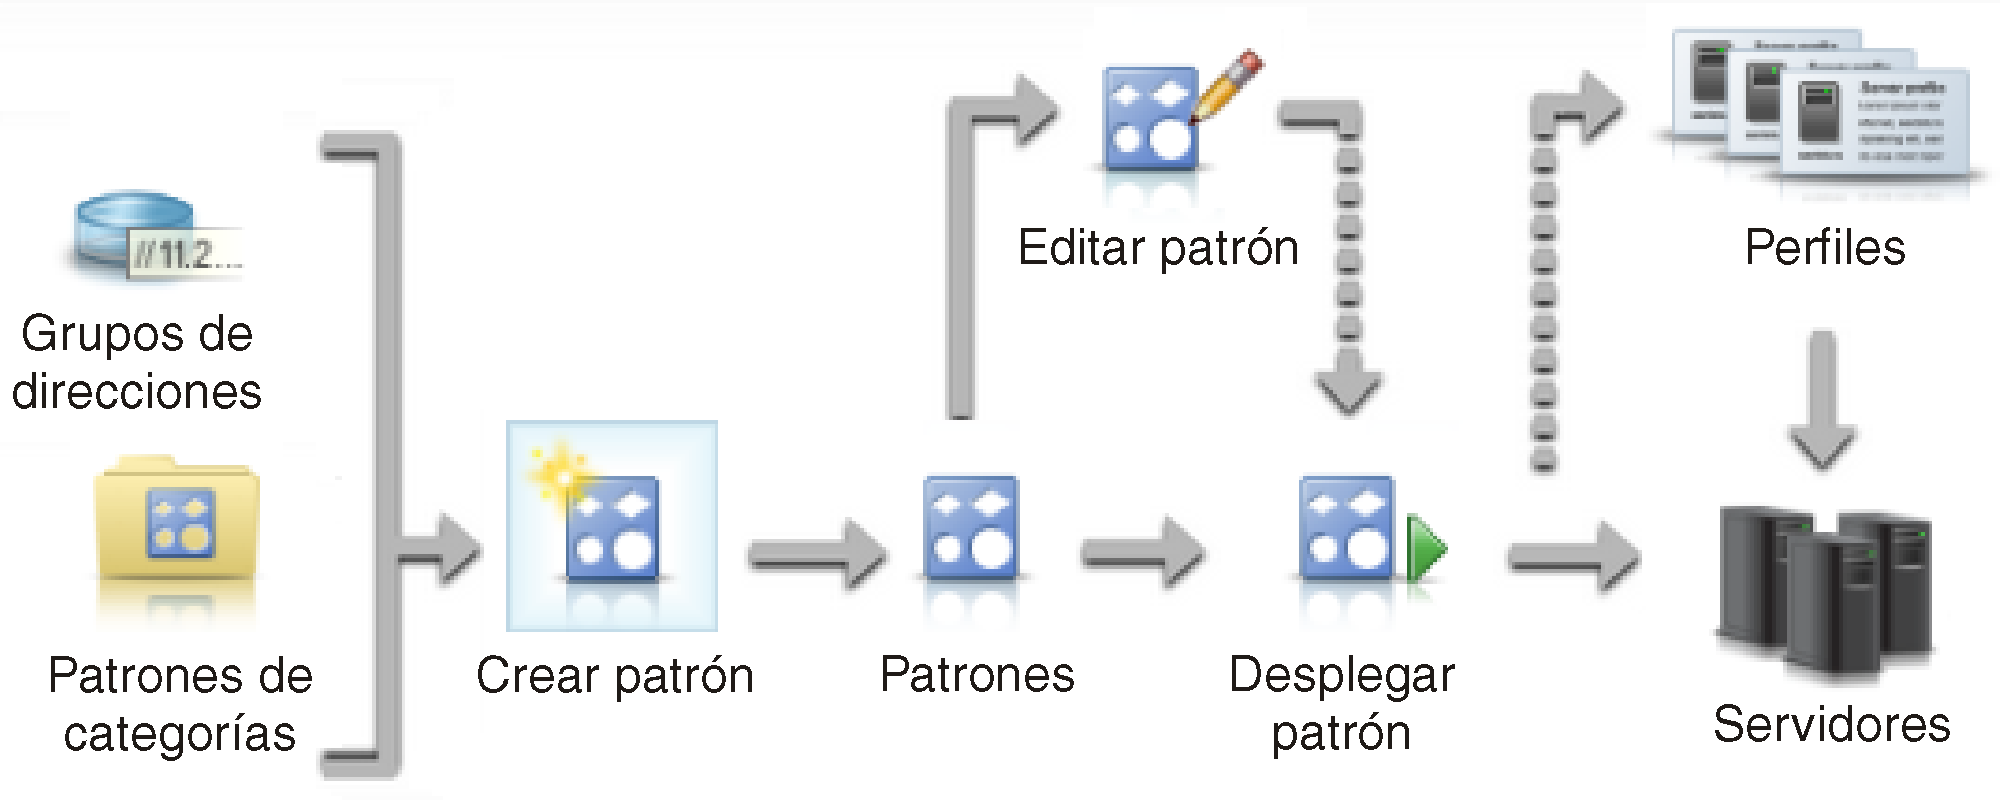 Ilustra los pasos que se requieren en la creación y despliegue de patrones de servidor.